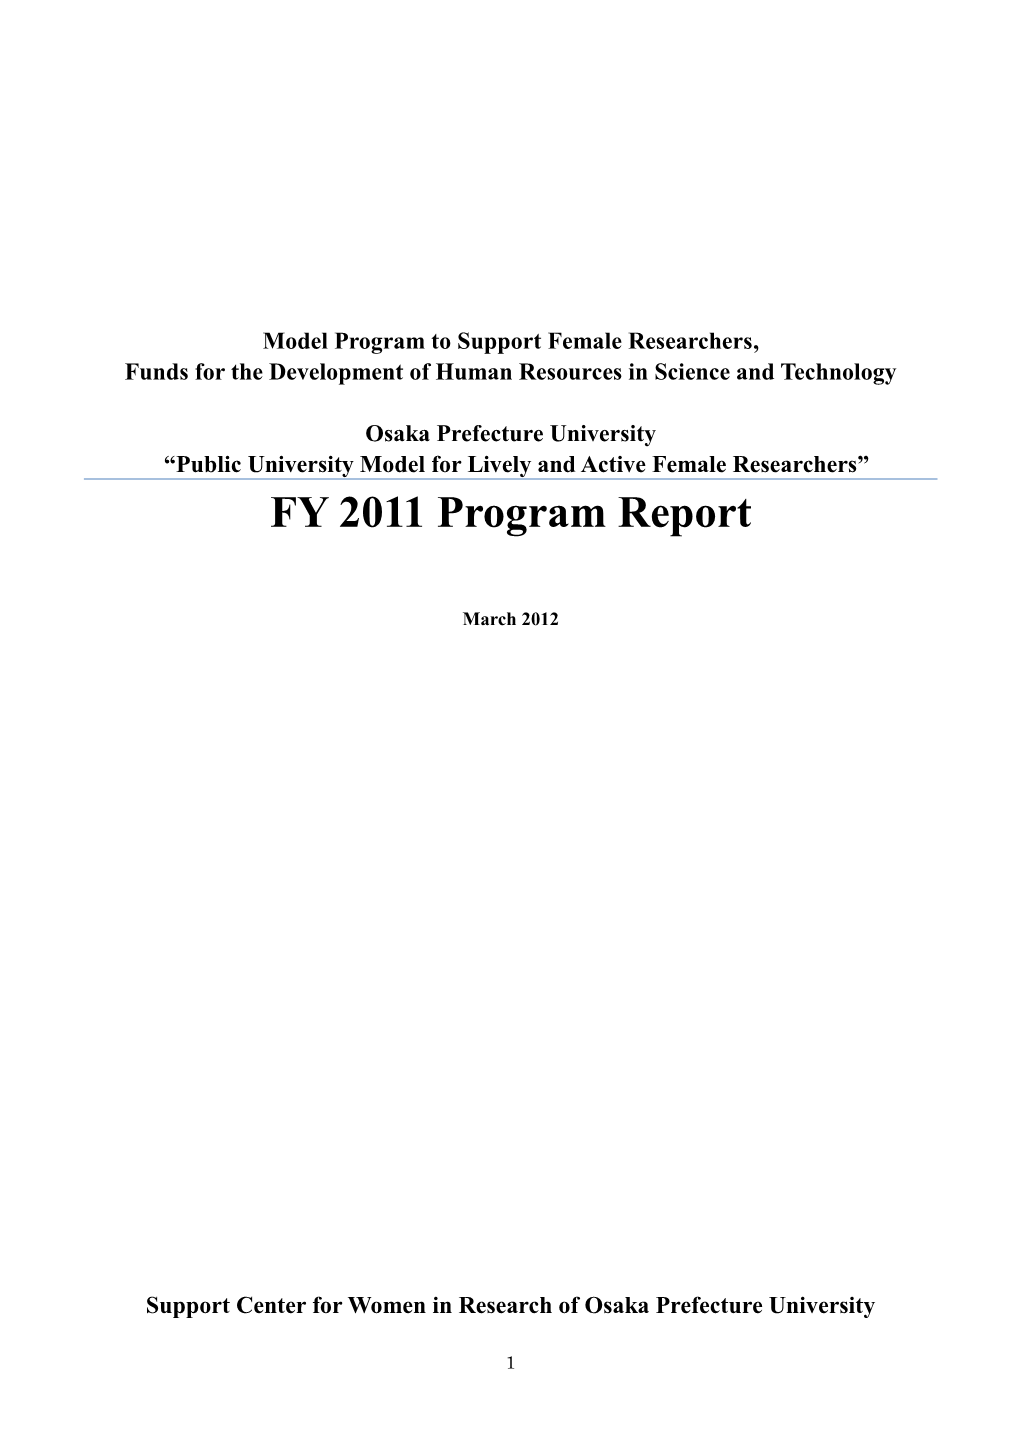 FY 2011 Program Report